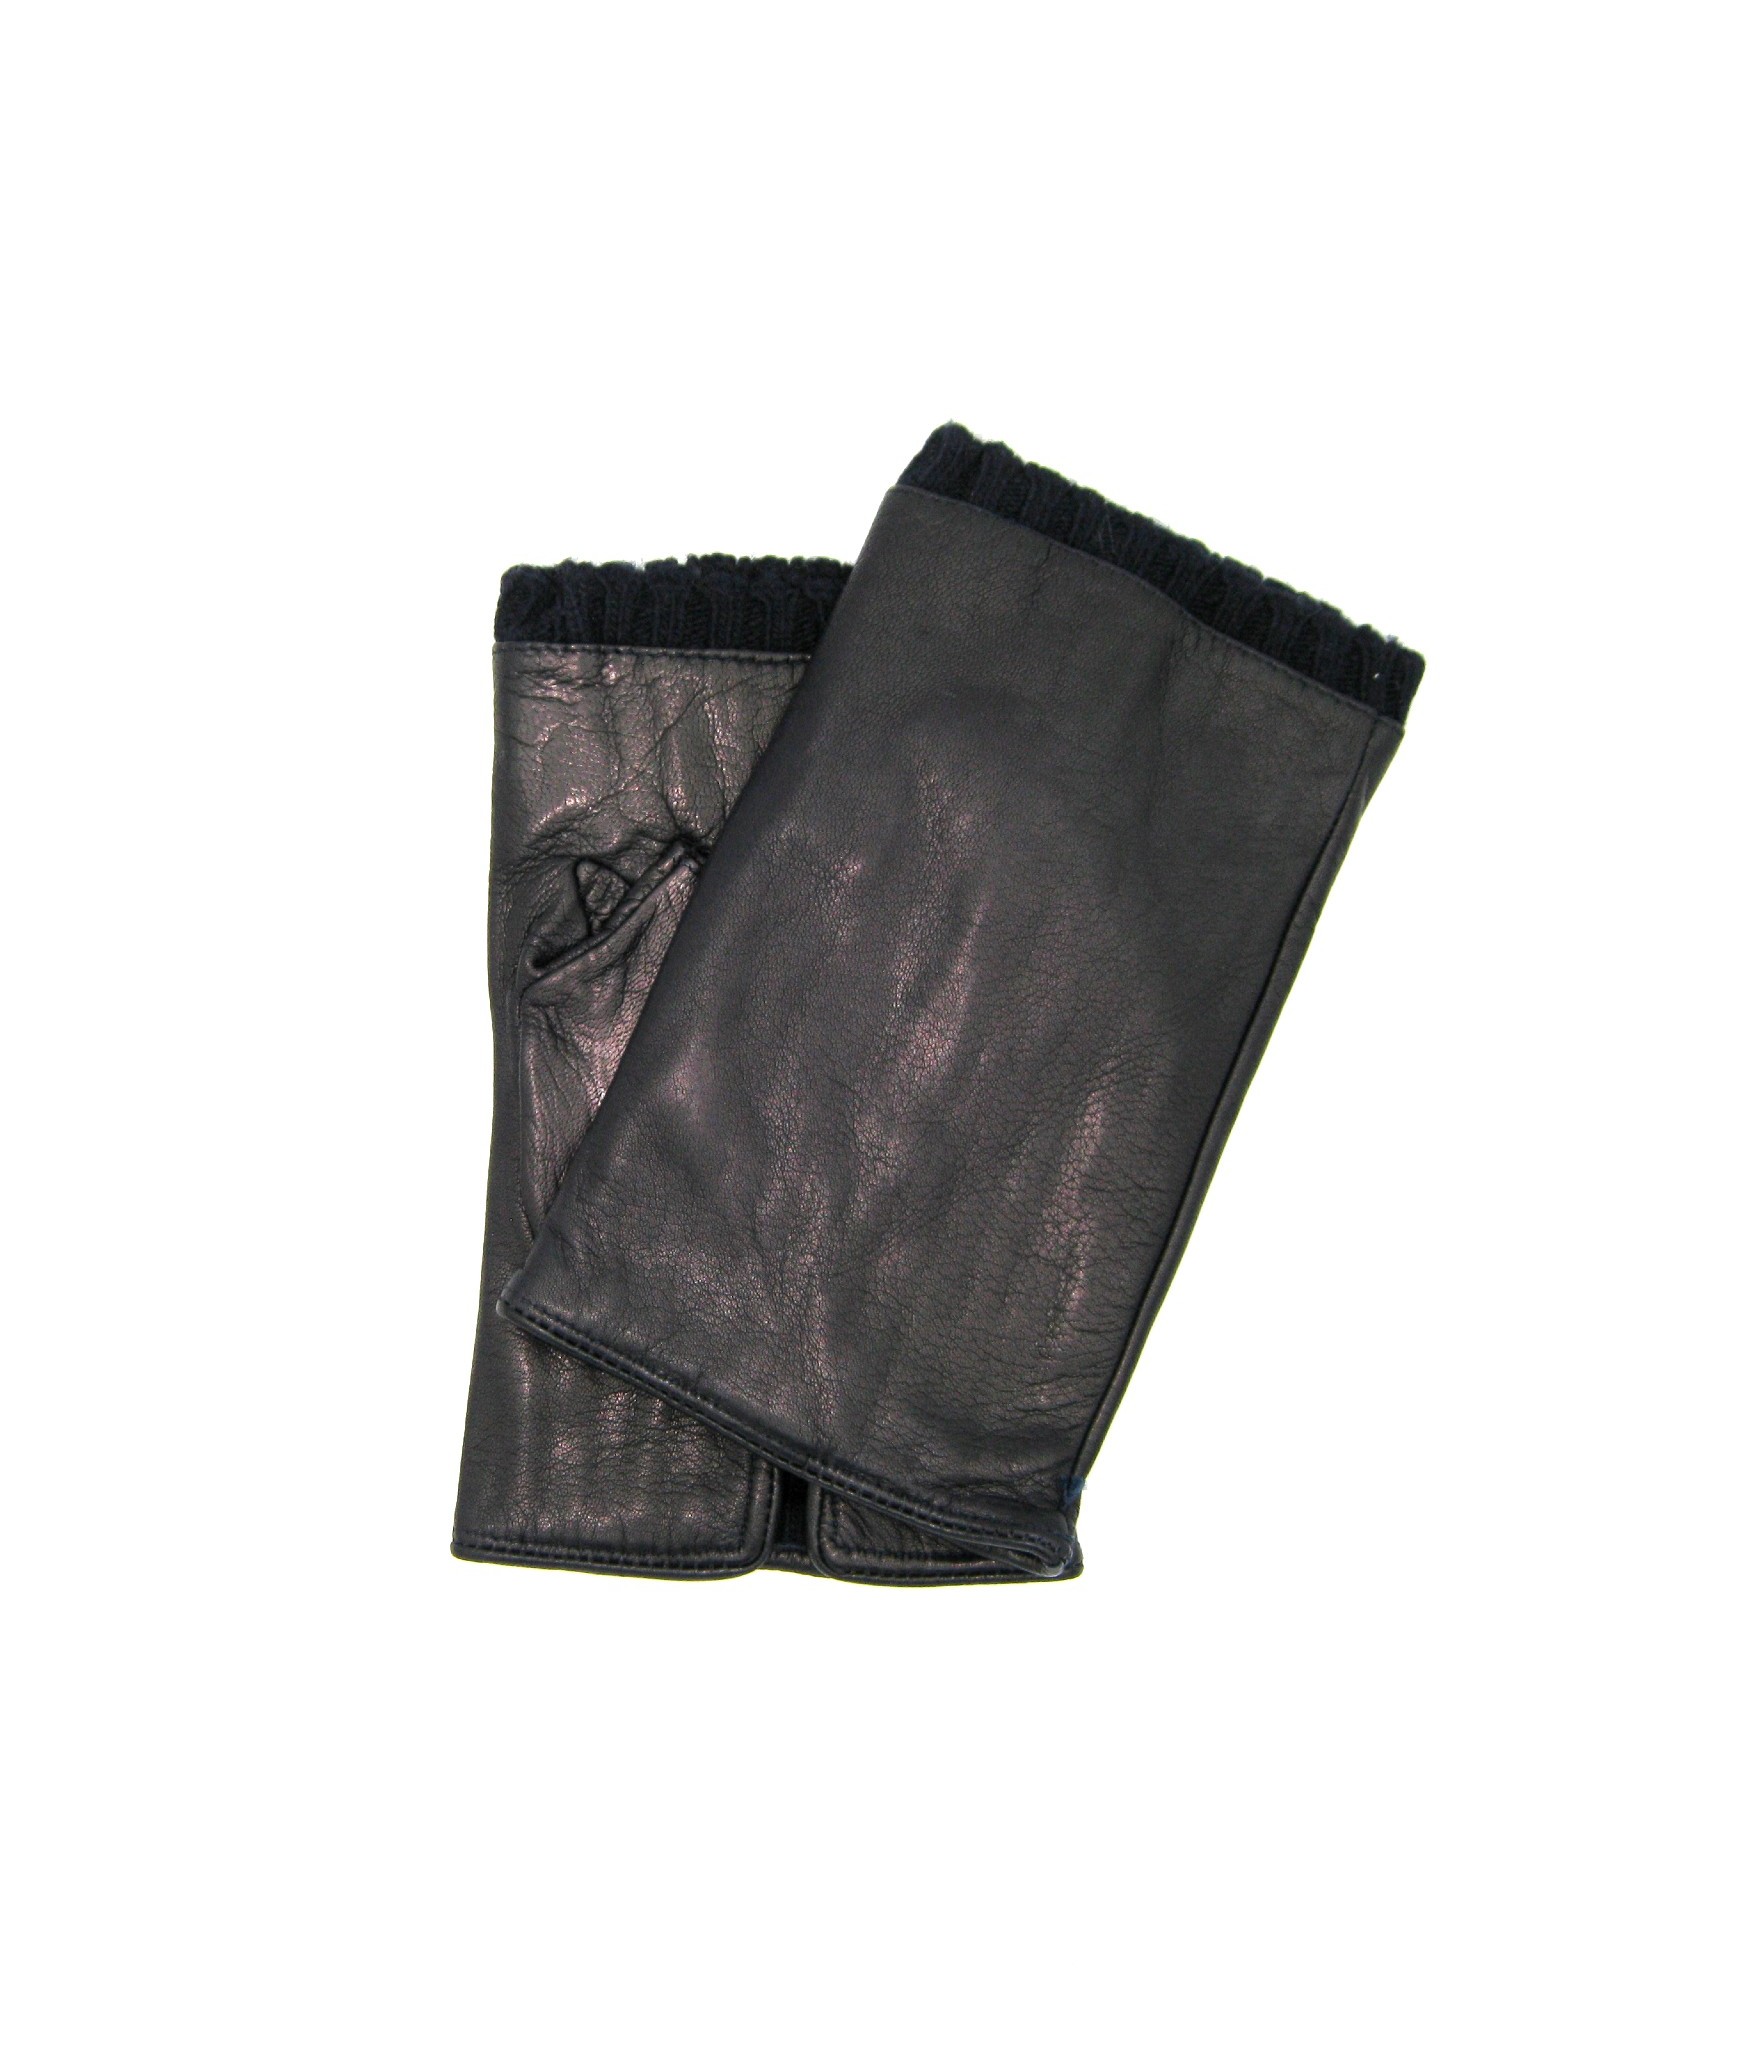 ホーム Uomo Half Mitten in Nappa leather cashmere lined Black